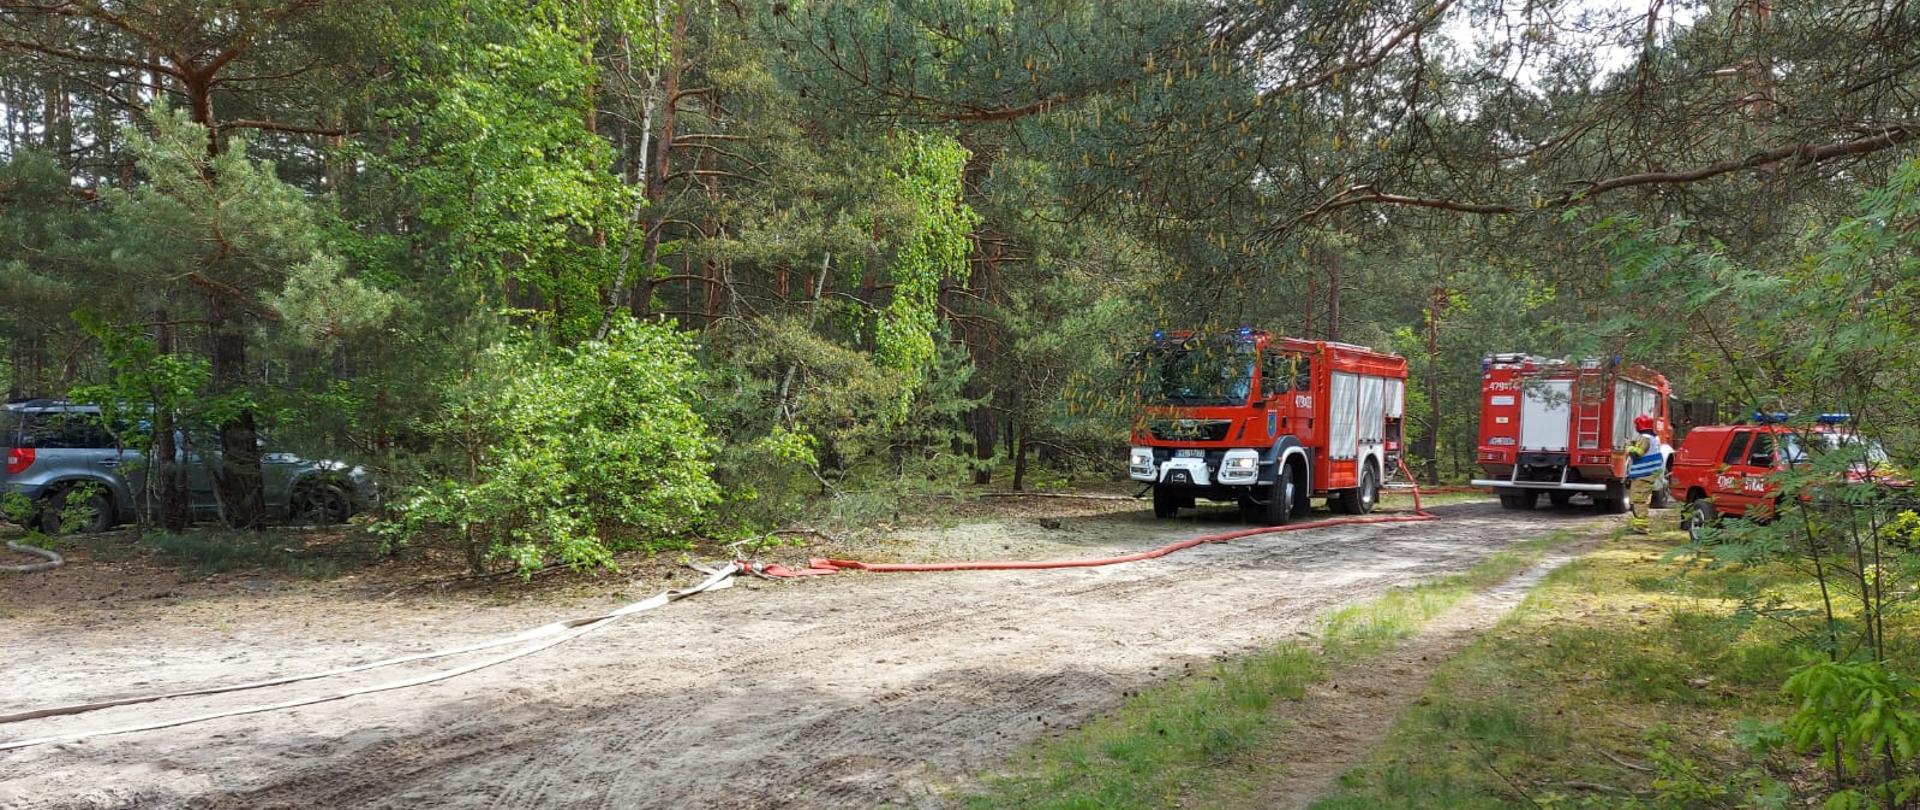 Zdjęcie przedstawia ustawienie czerwonych samochodów pożarniczych w trakcie ćwiczeń.